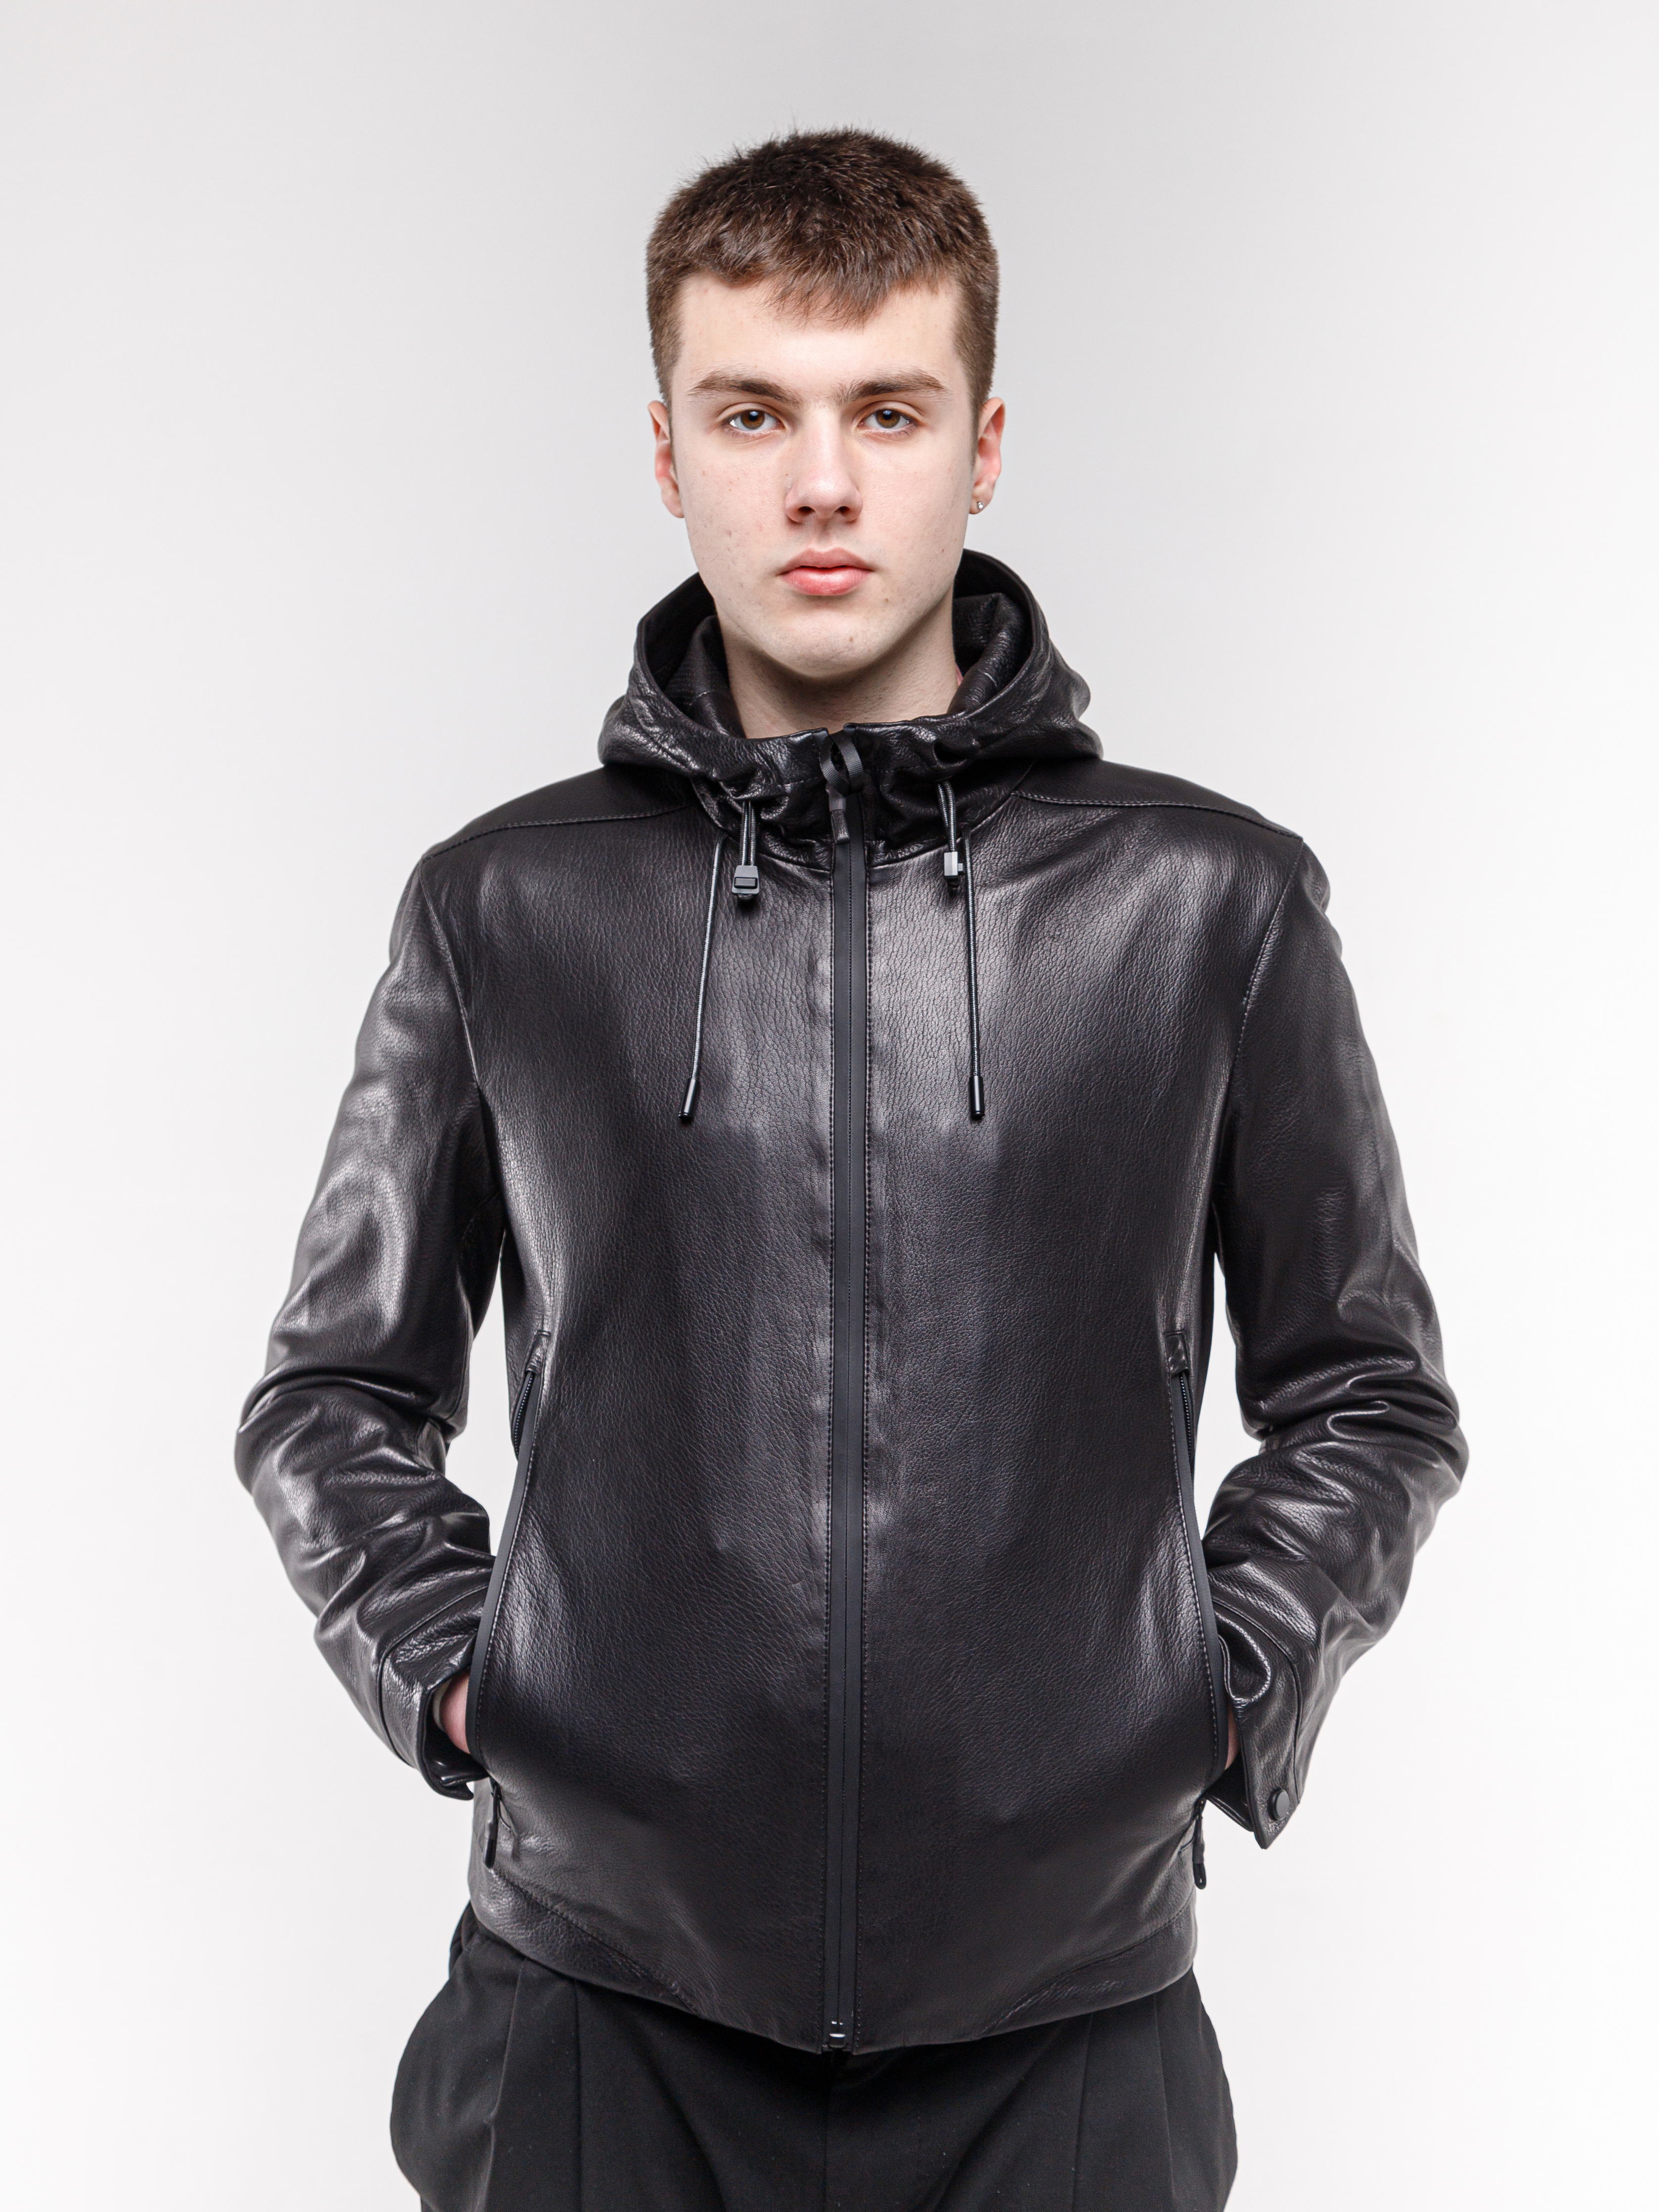 Кожаная куртка мужская 8066_48 черная 54 RU